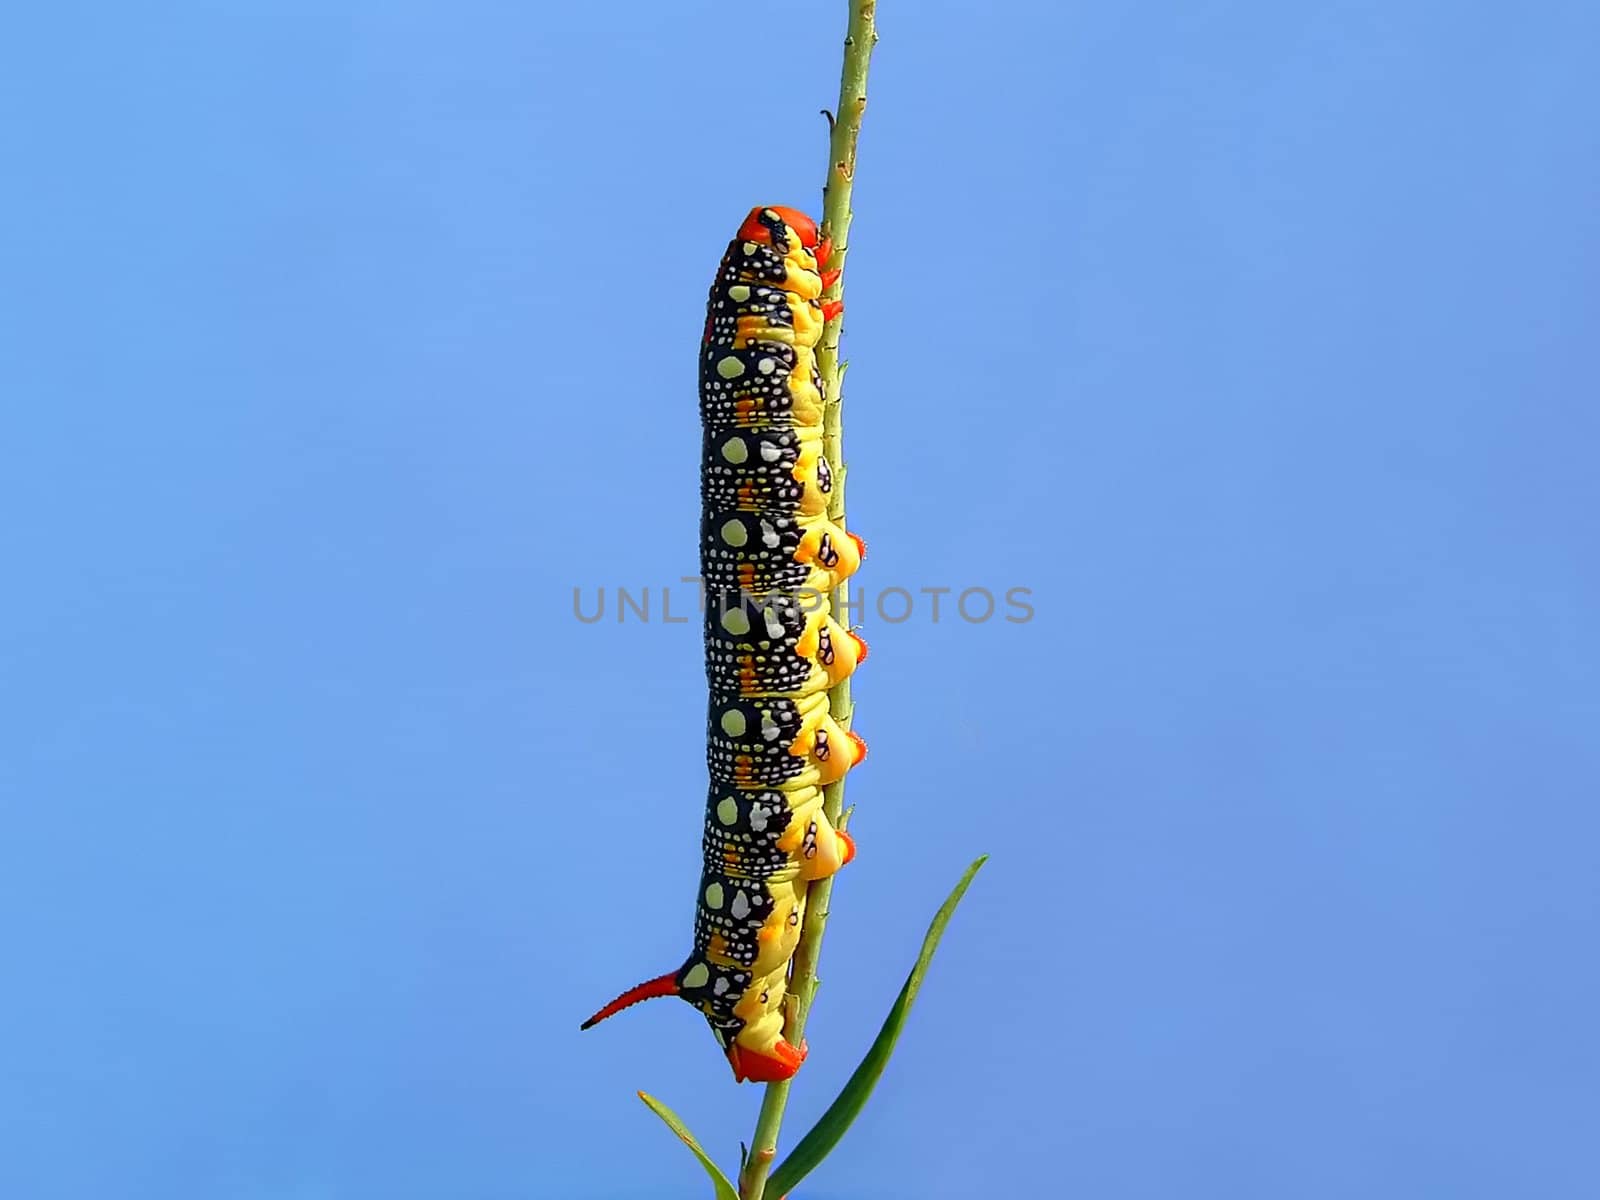 Motley caterpillar on a stalk  by myyayko